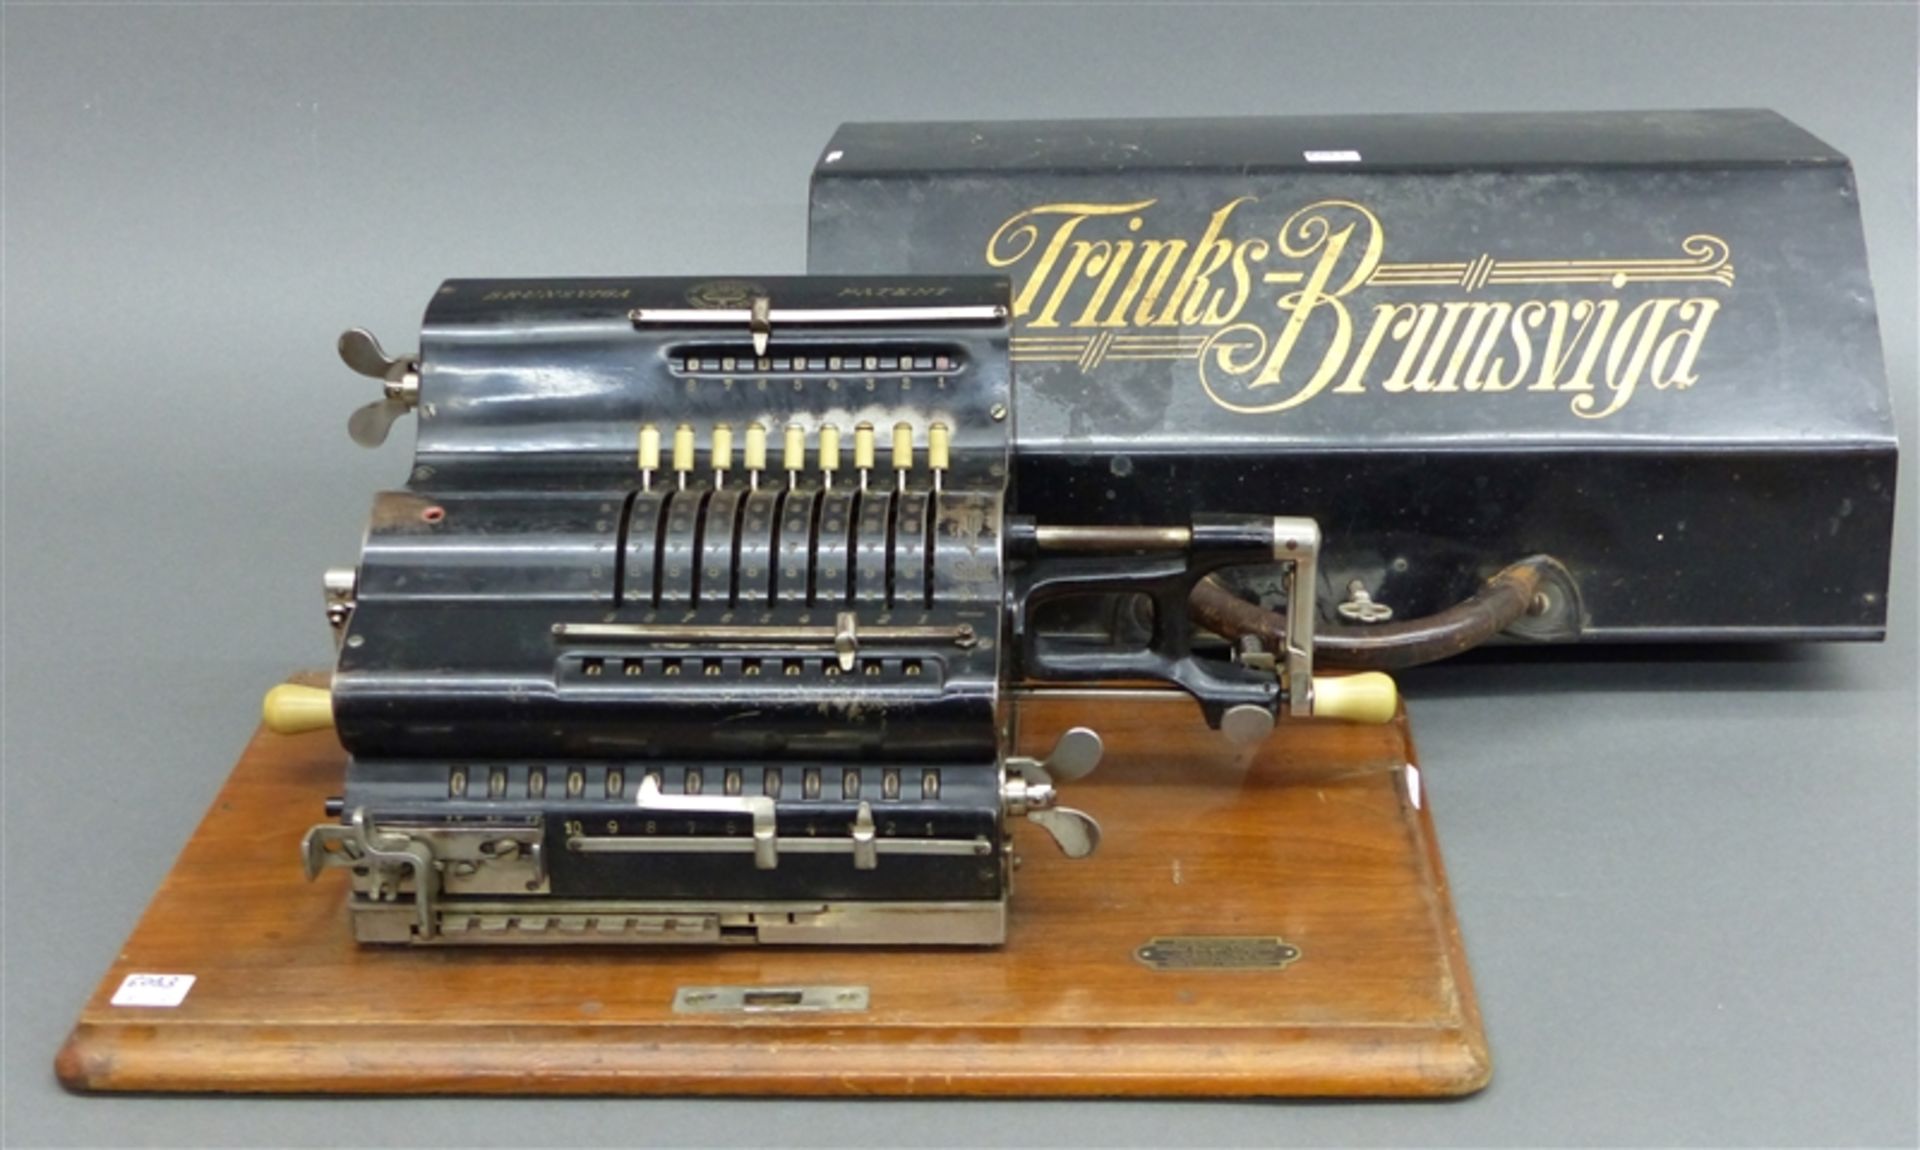 Rechenmaschine um 1900, Brunsviga, Grimmendtalis & Co., Braunschweig, auf Holzplatte, im